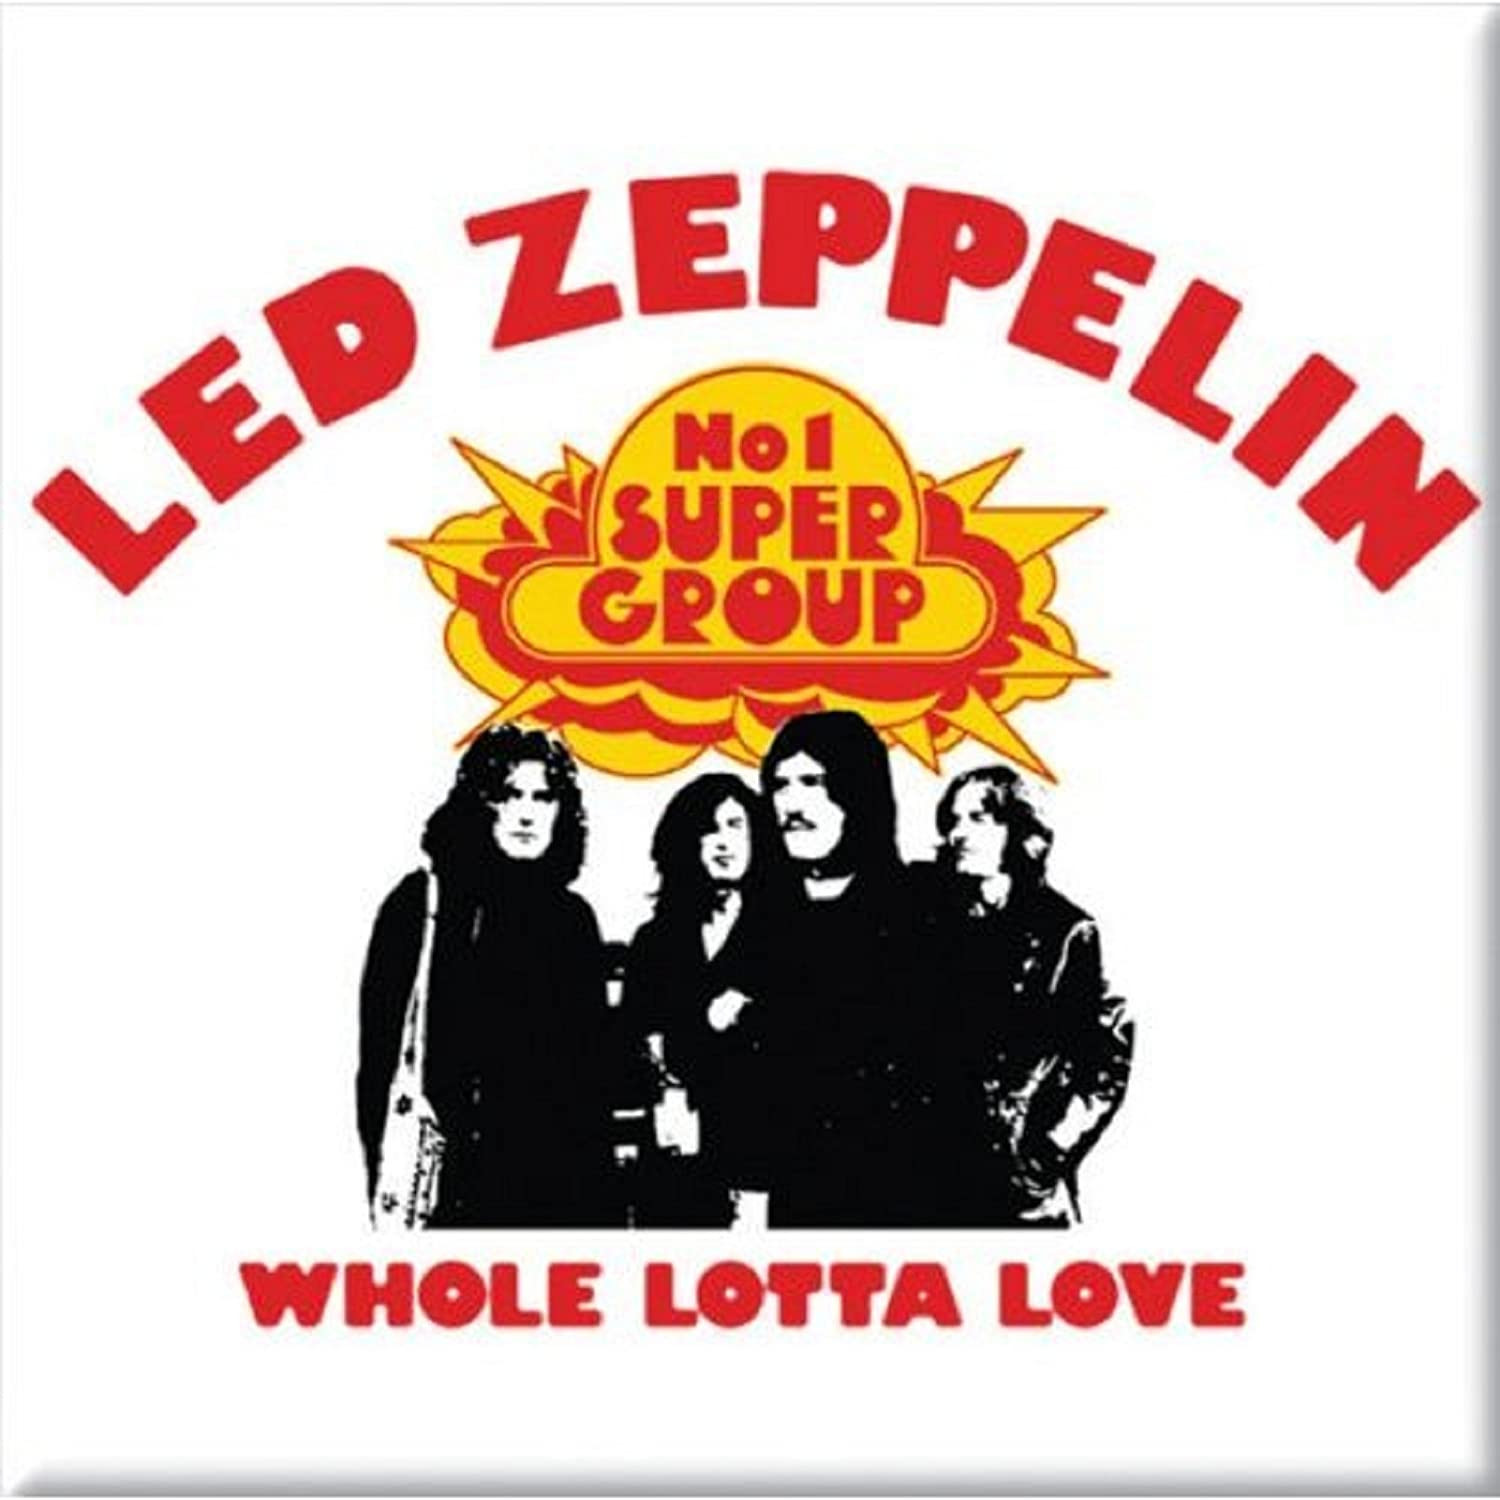 Led zeppelin whole love. Группа led Zeppelin. Led Zeppelin 1969. Led Zeppelin «whole Lotta Love» 1969. 1969 Led Zeppelin II обложка.